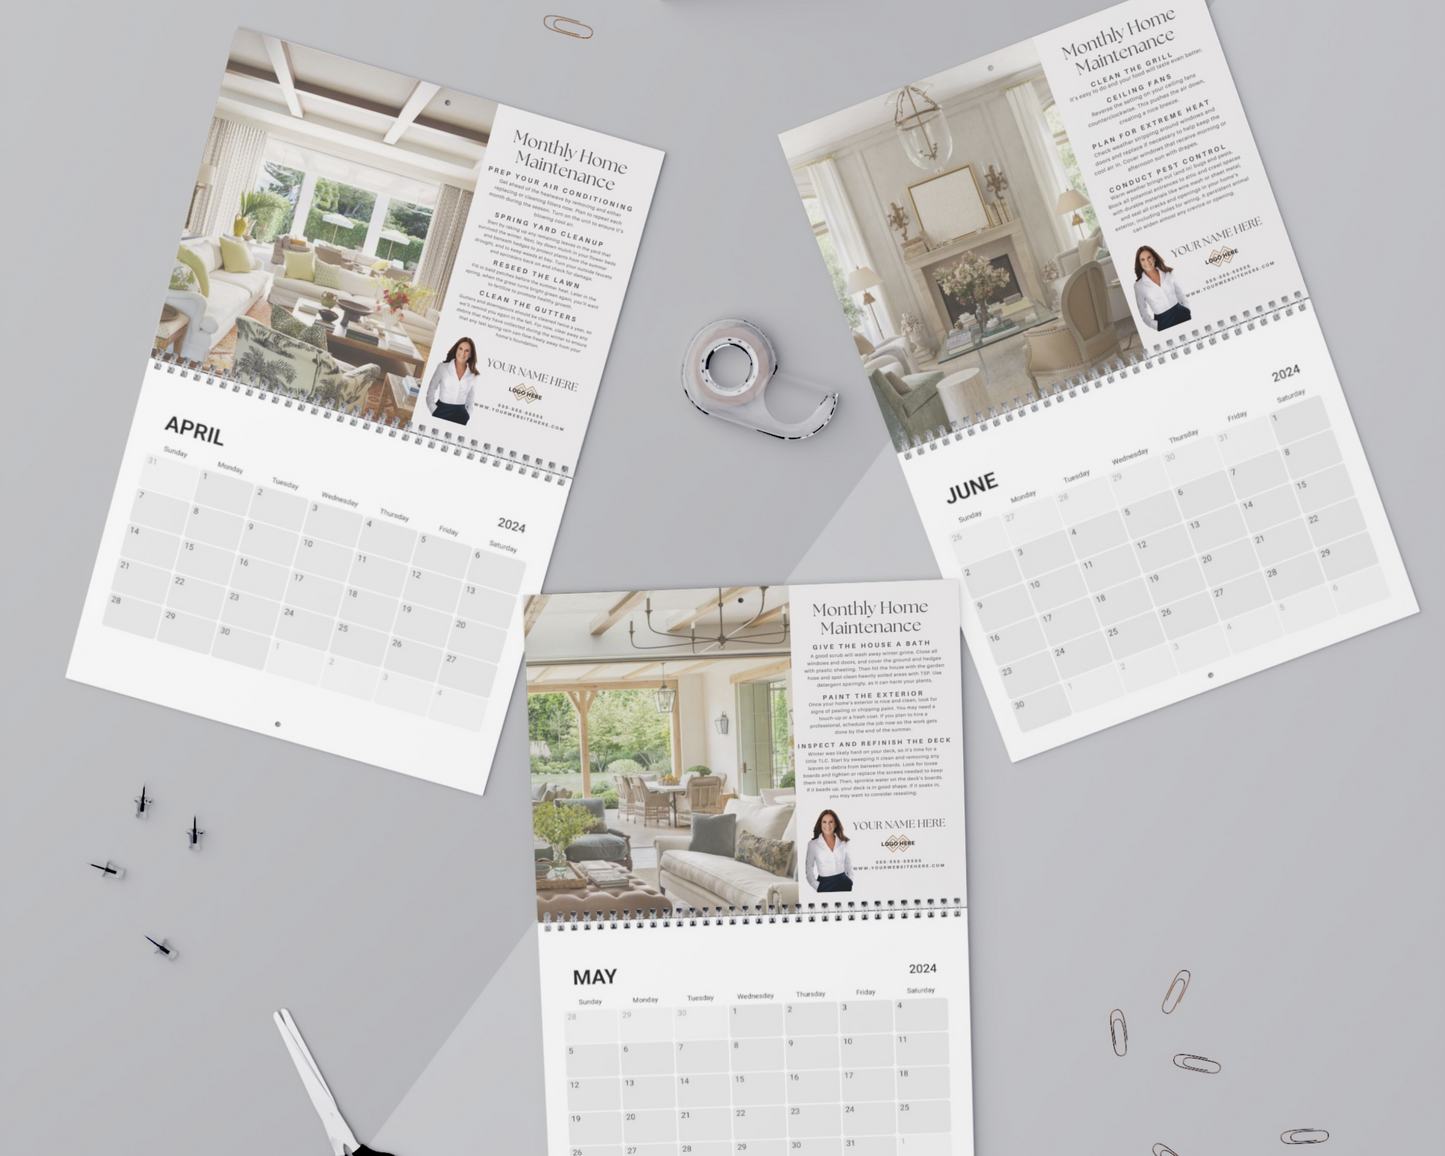 Home Maintenance Calendar 2 - Client Glift